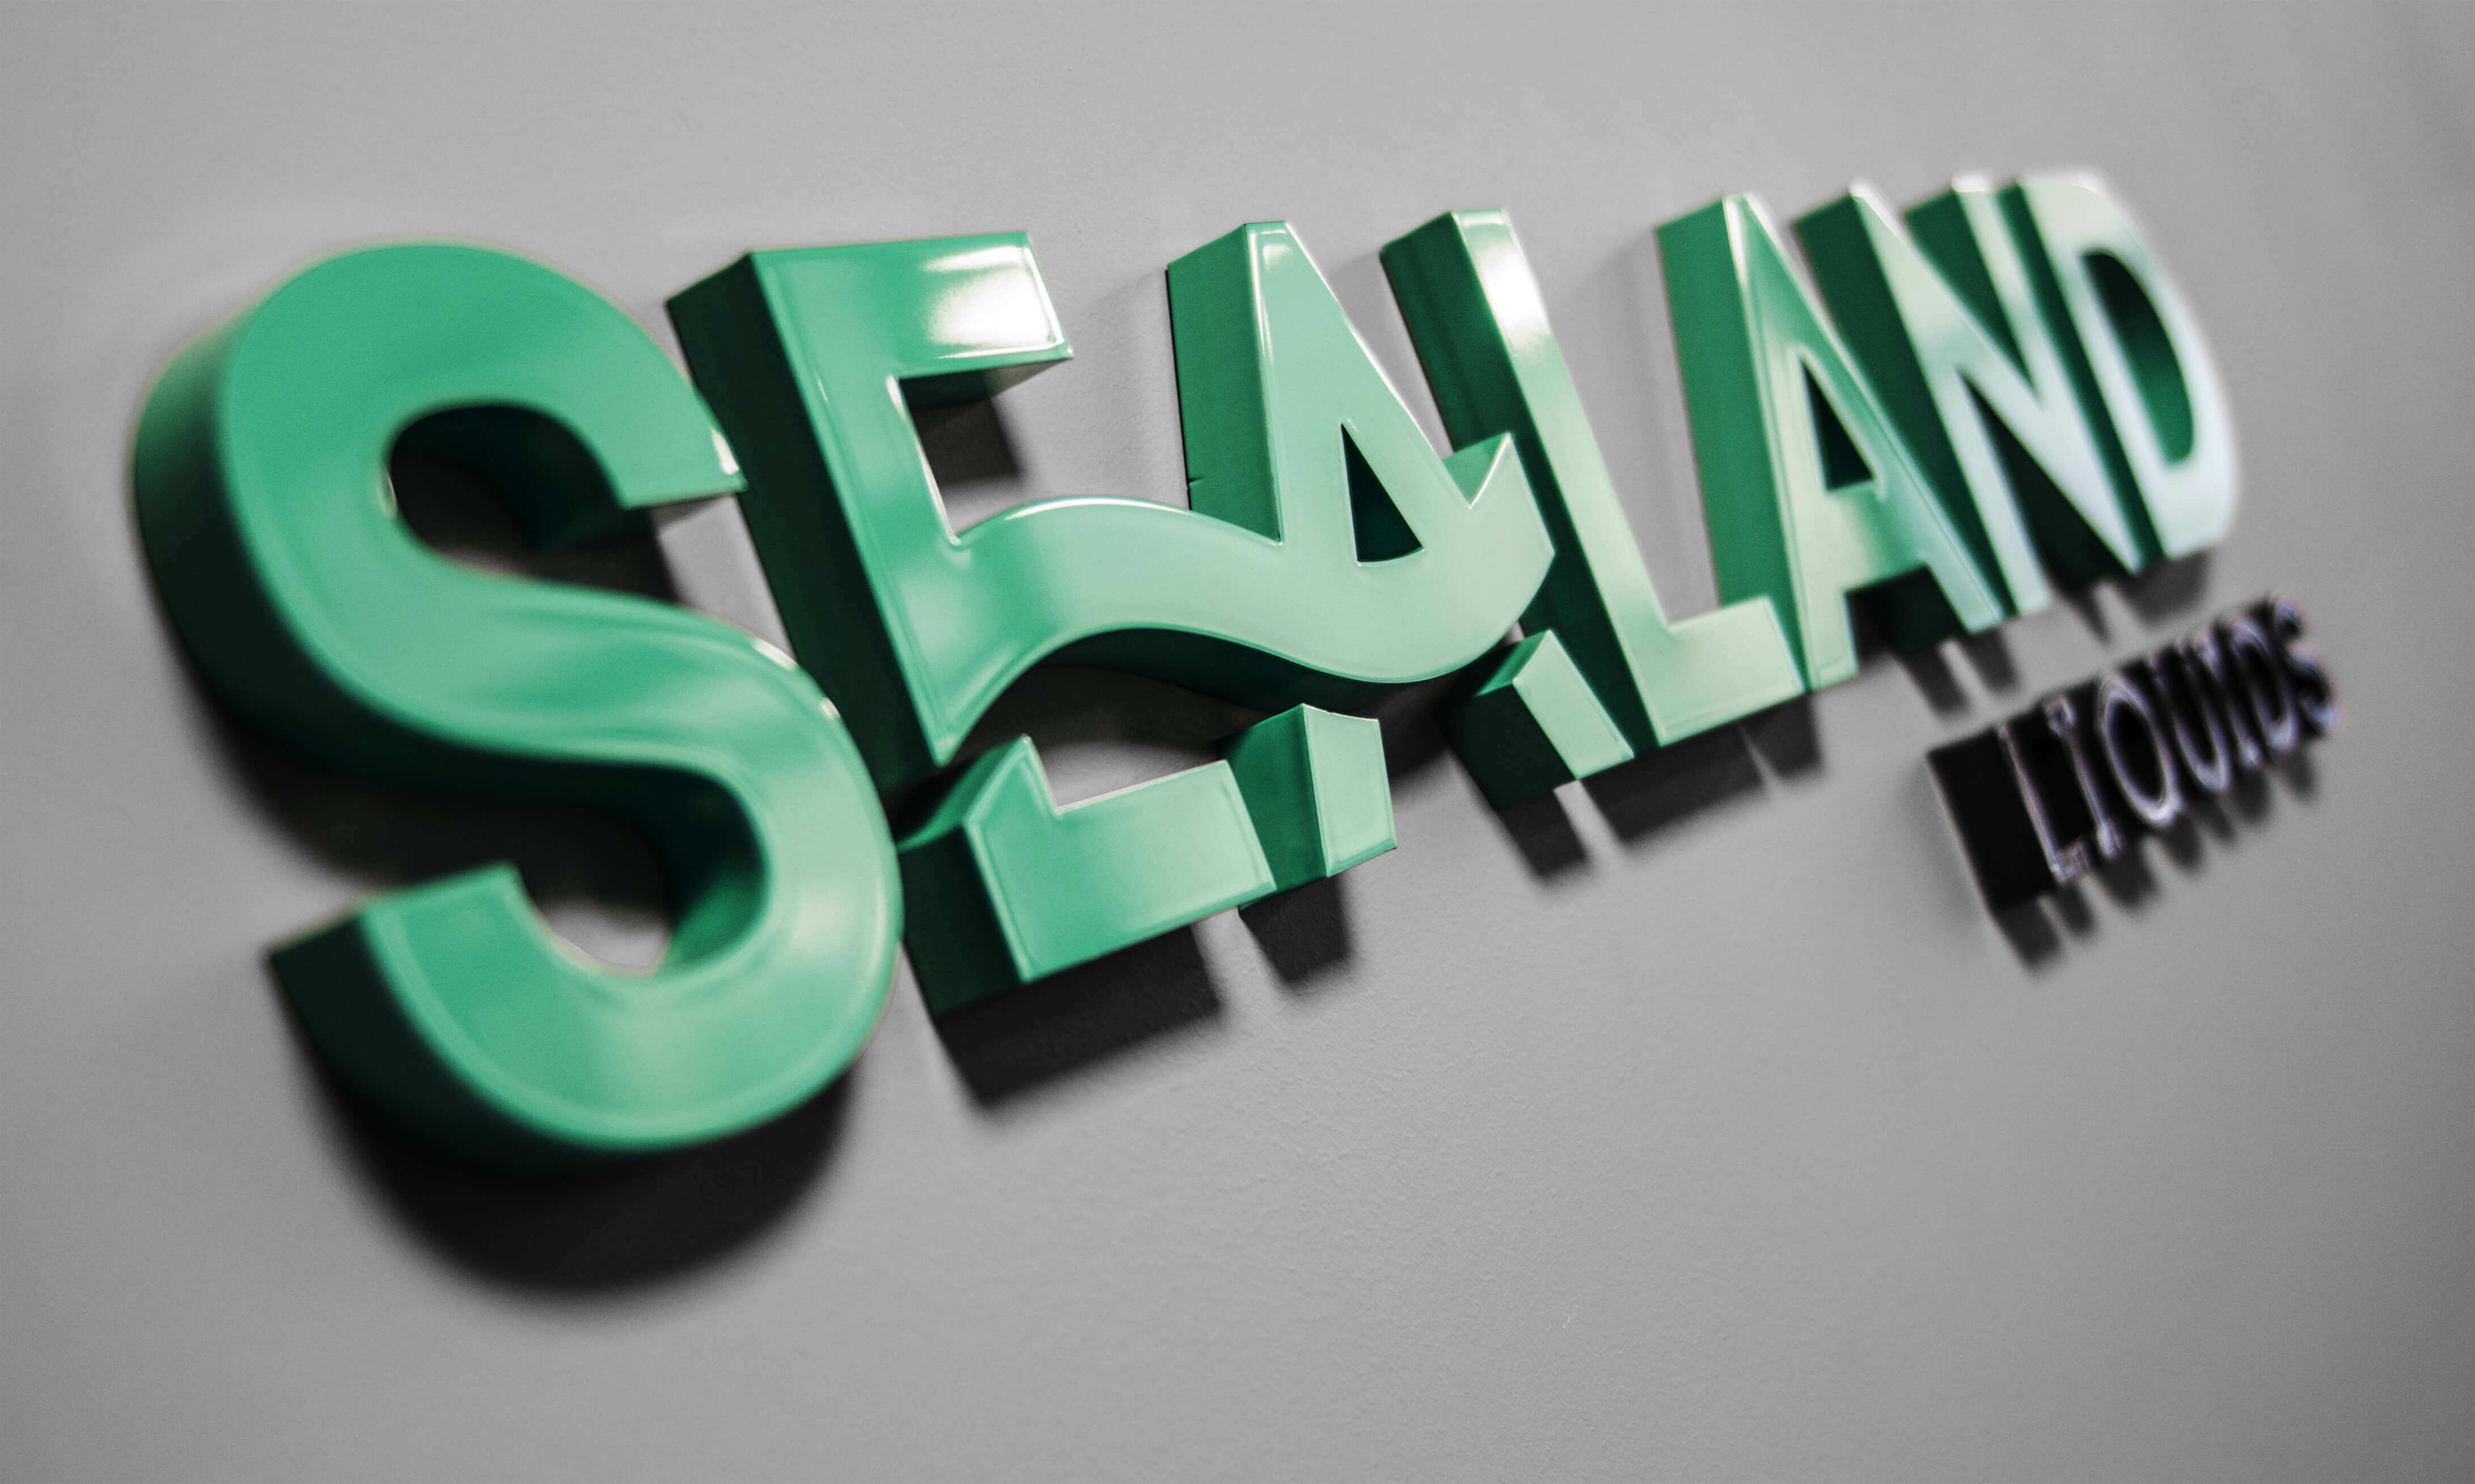 Sealand - Sealand - litery przestrzenne 3D umieszczone na ścianie malowane natryskowo